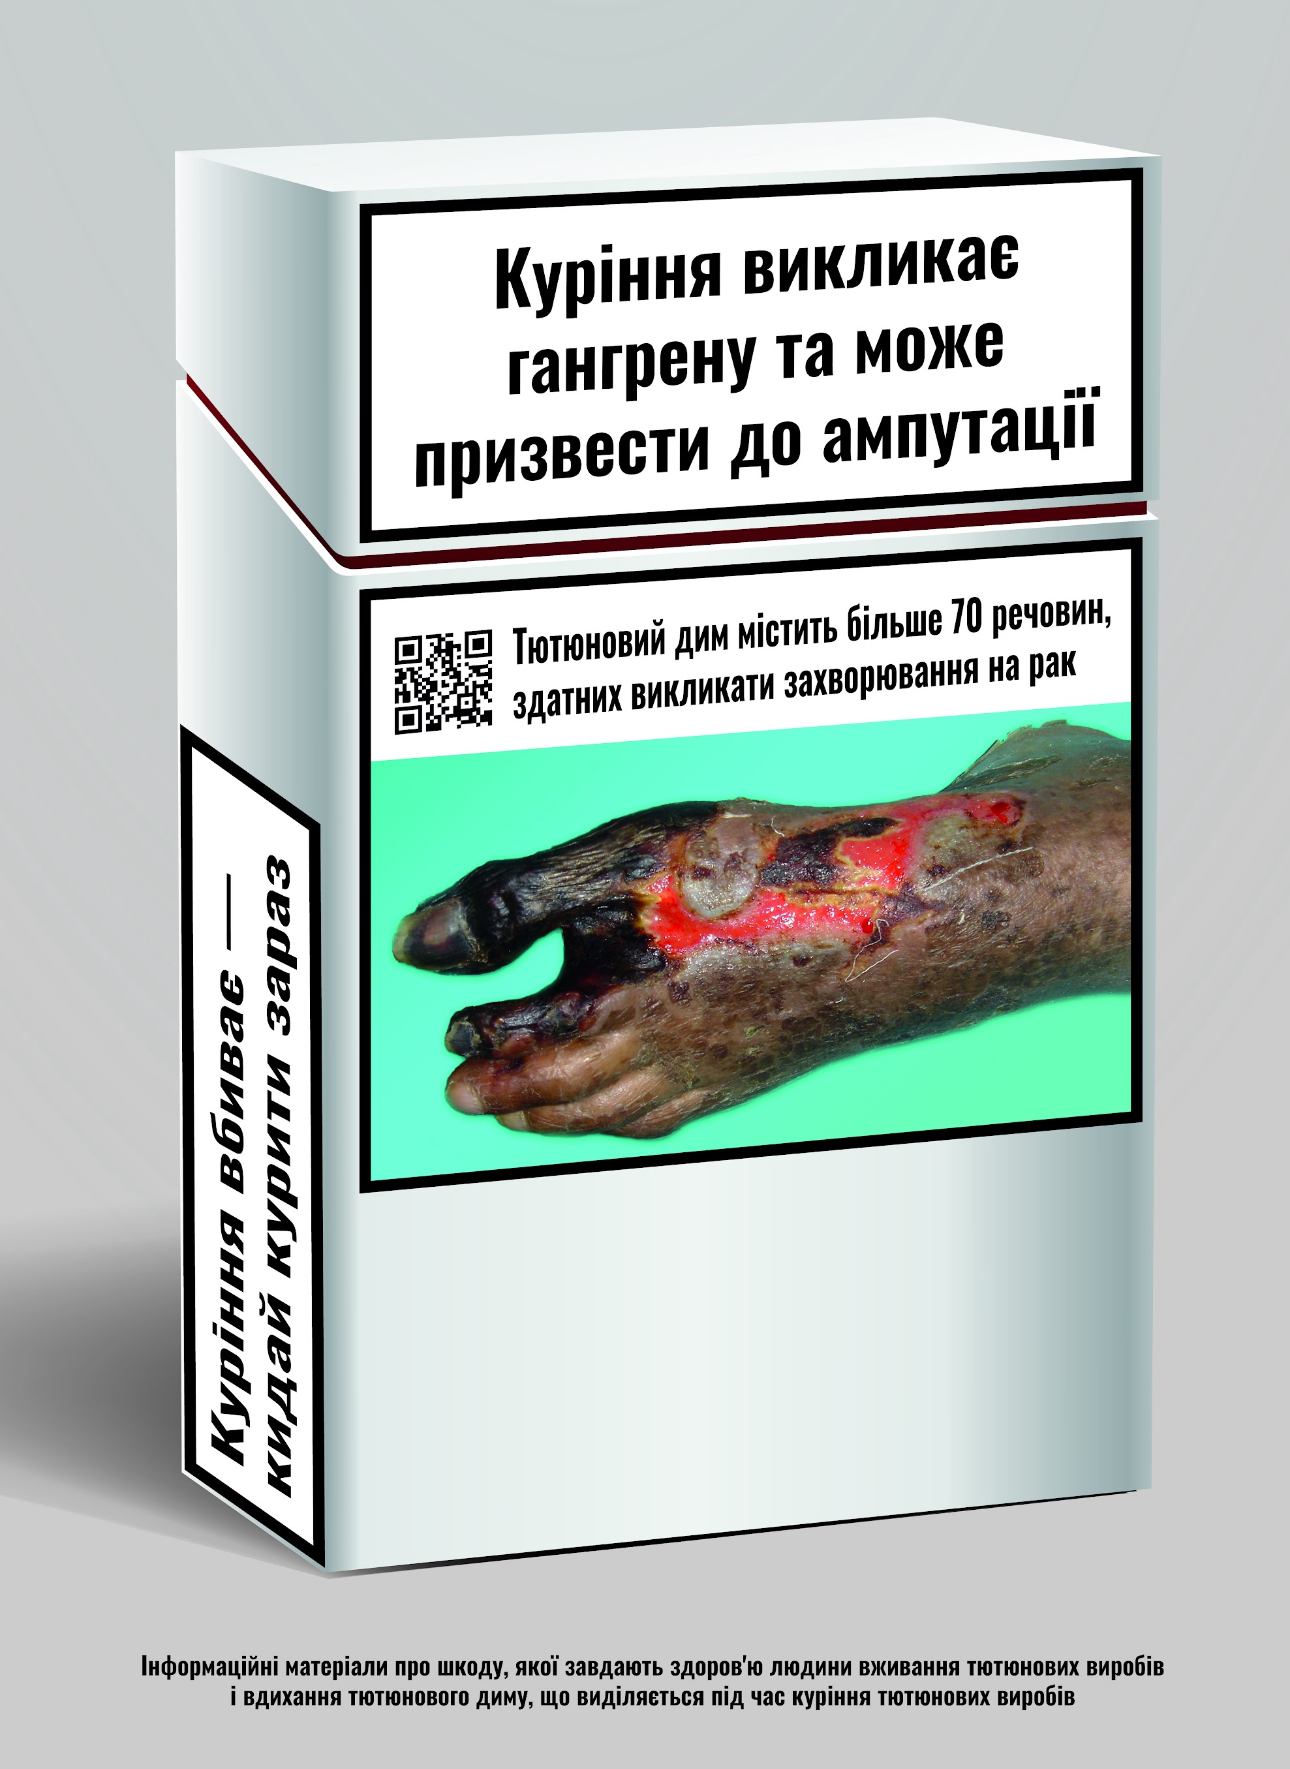 На пачках цигарок з'явилися кольорові фото хвороб: “Українці будуть менше палити“